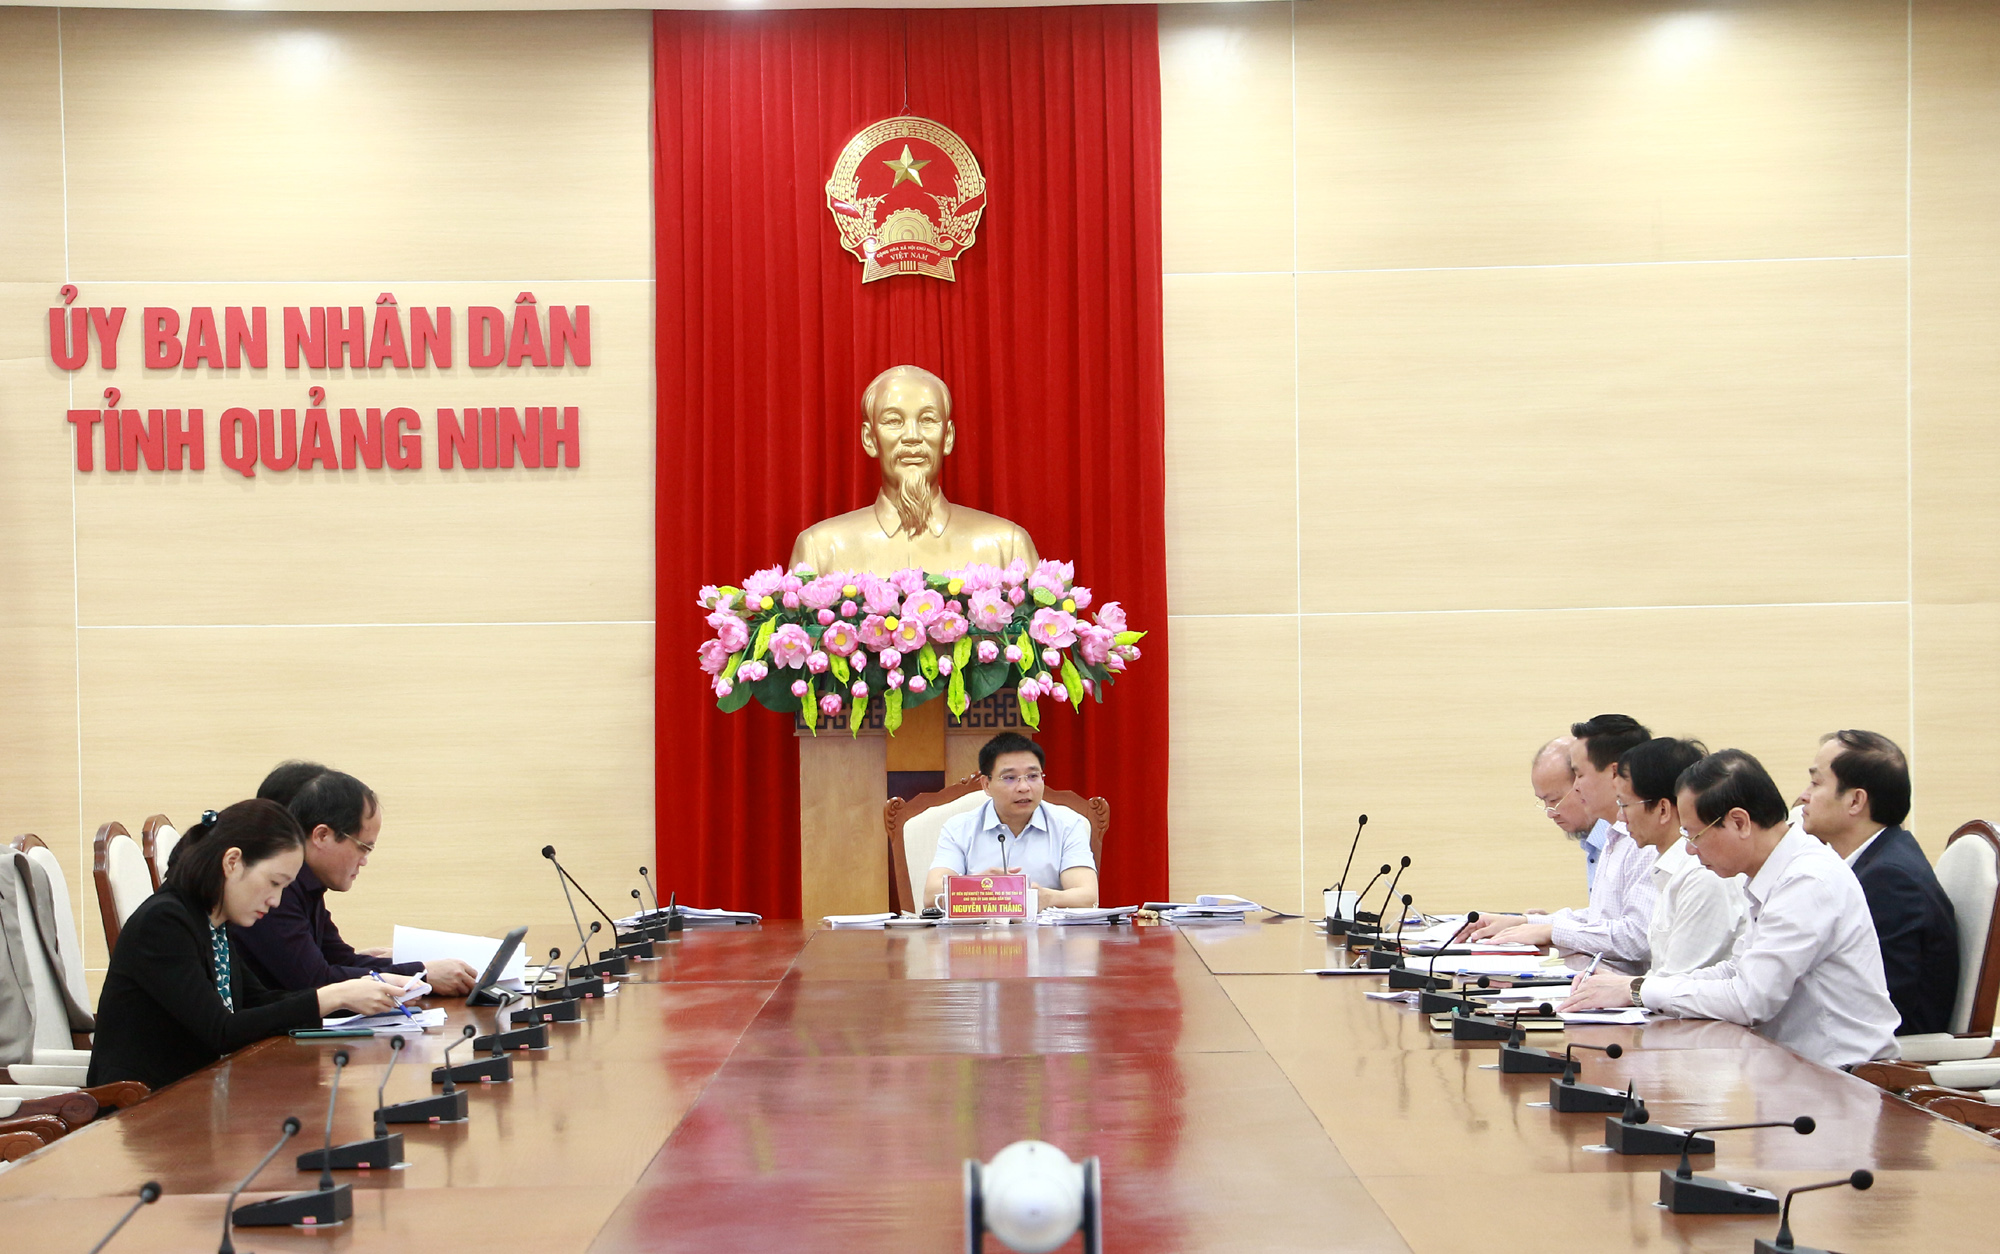 Đồng chí Nguyễn Văn Thắng, Phó Bí thư Tỉnh ủy, Chủ tịch UBND tỉnh, chủ trì cuộc họp.